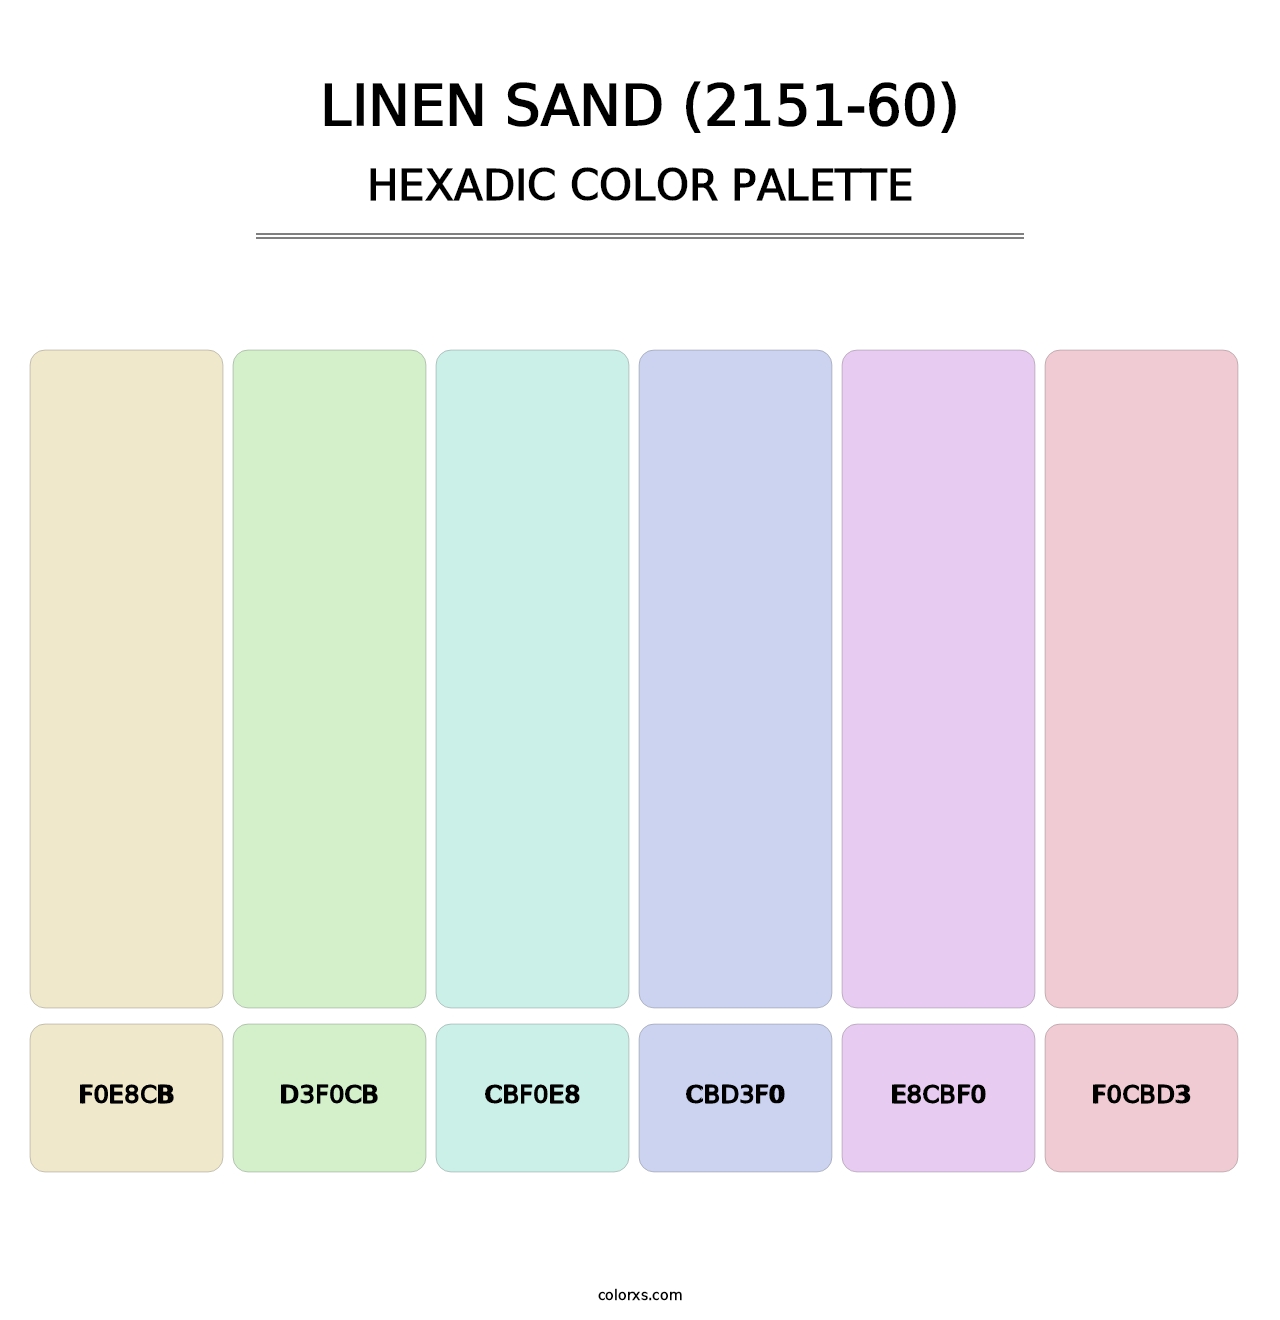 Linen Sand (2151-60) - Hexadic Color Palette